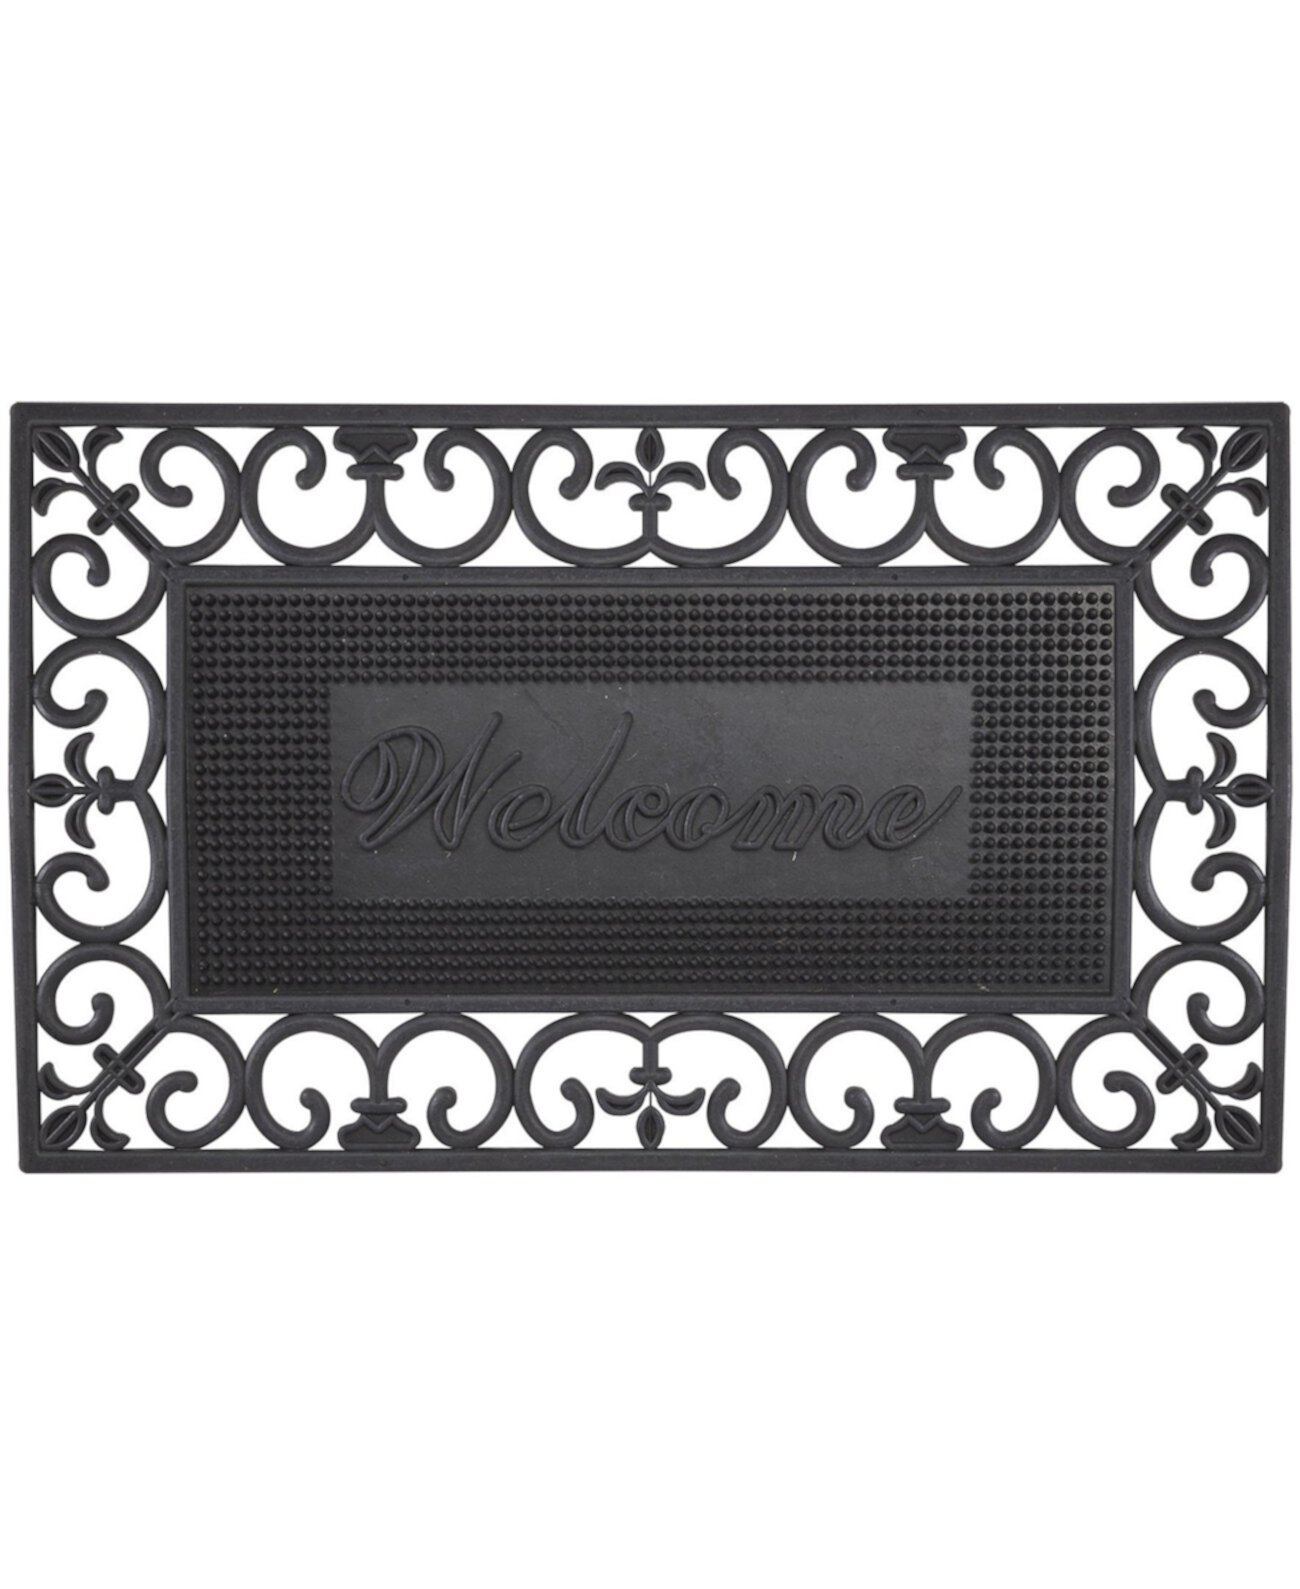 Резиновые булавки Fleur De Lis Pin Welcome Doormat, 18 x 30 дюймов Envelor